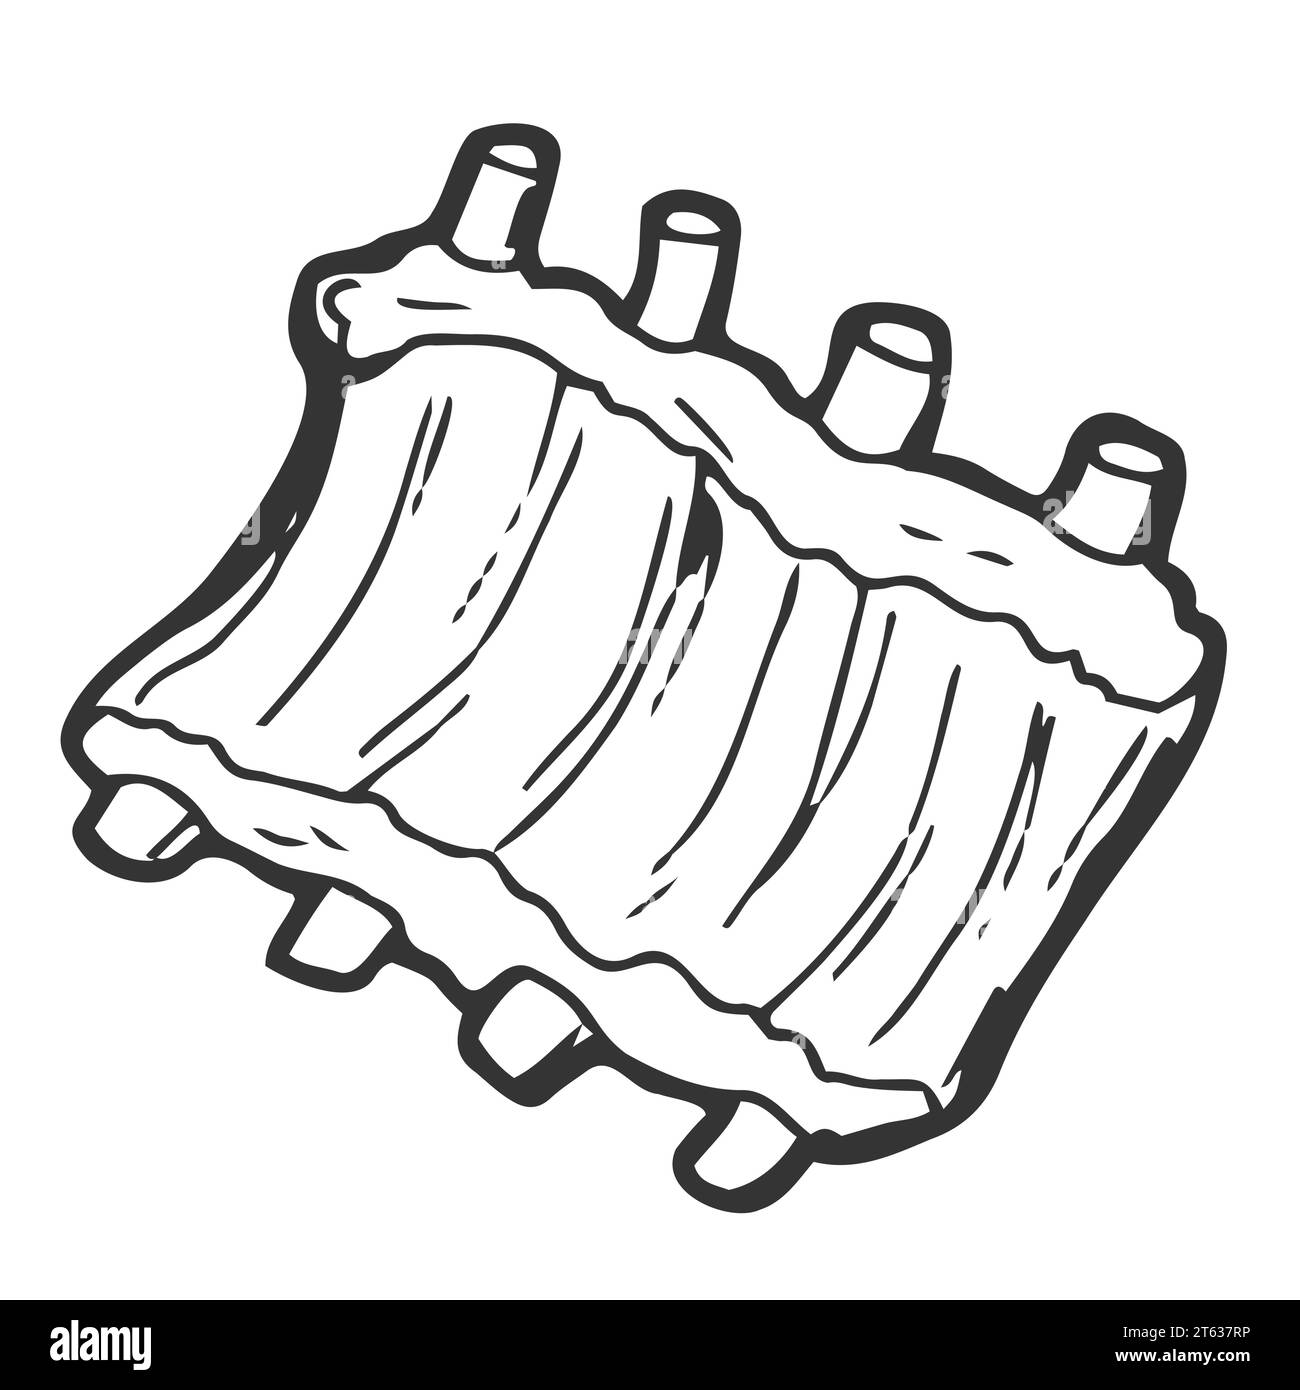 Côtes de porc pour illustration vectorielle d'icône de contour de barbecue. Ligne de viande crue ou grillée tirée à la main avec des os, des côtes de bœuf ou d'agneau pour griller sur la fête de barbecue, la nourriture Illustration de Vecteur